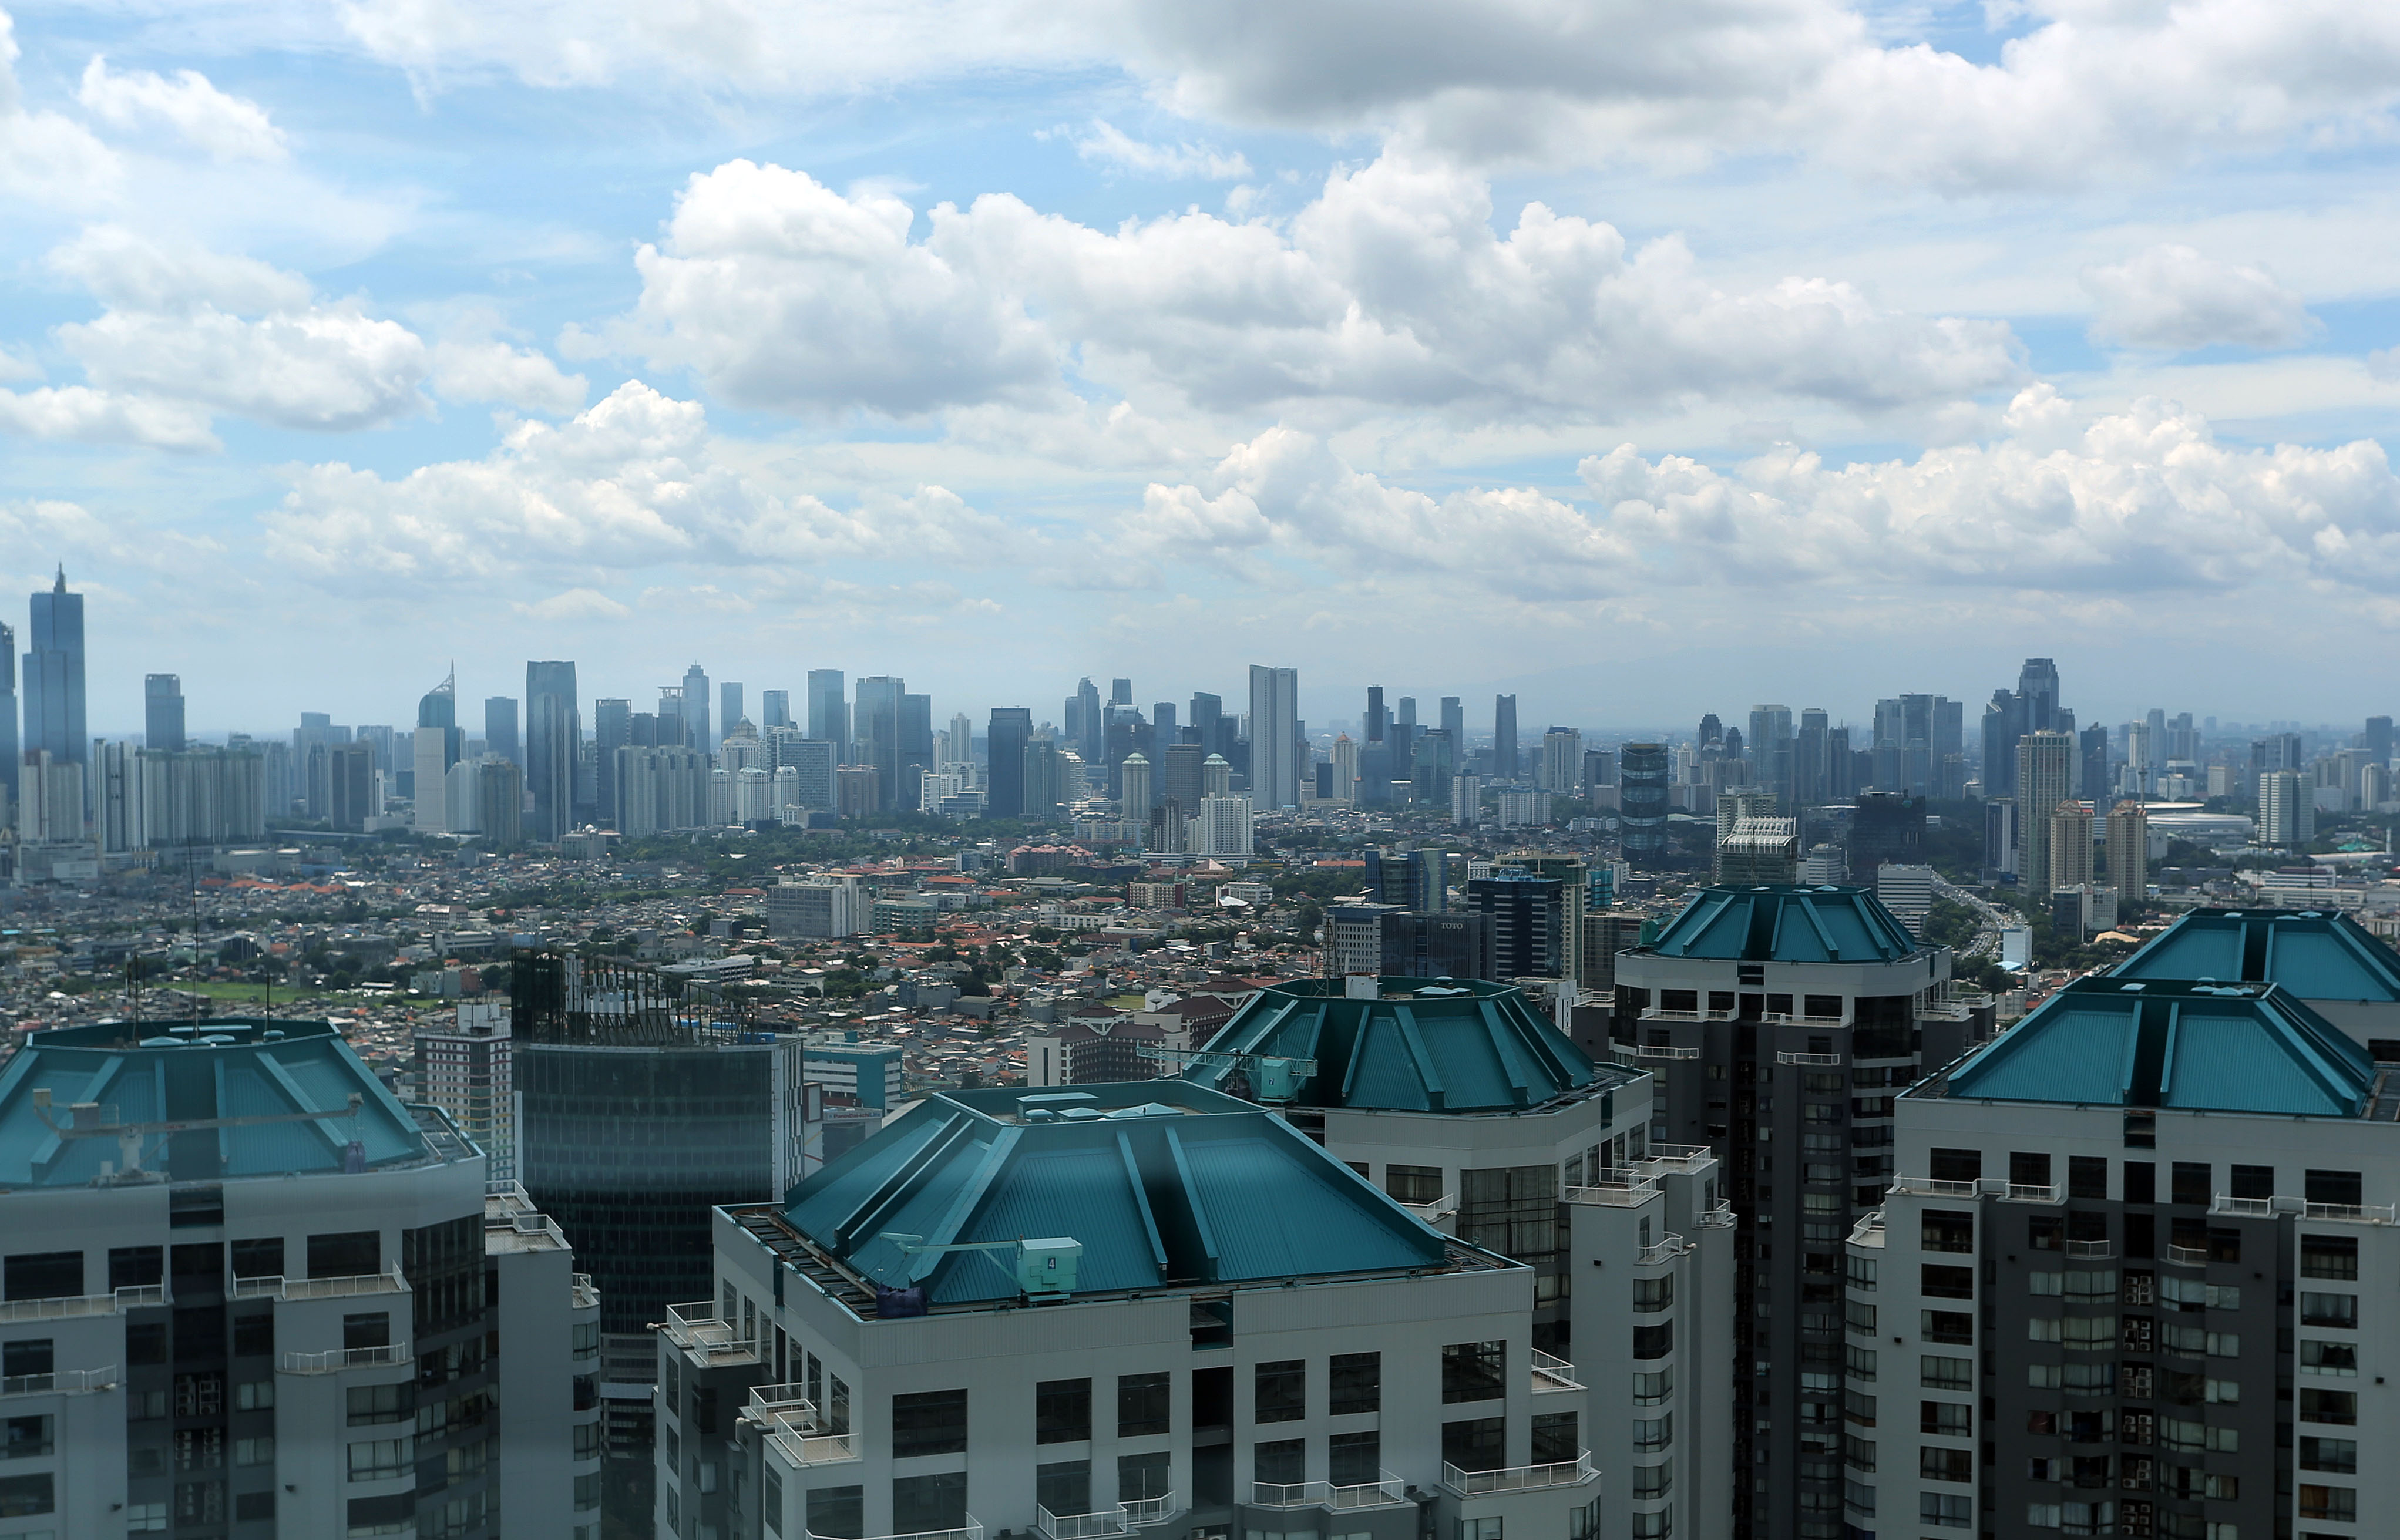 Jajaran gedung bertingkat di Jakarta, Rabu 22 Februari 2023. Kementerian Keuangan optimistis realisasi defisit pada Anggaran Pendapatan dan Belanja Negara (APBN) 2023 tidak akan lebih dari target yakni 2,84 persen. Foto : Panji Asmoro/TrenAsia